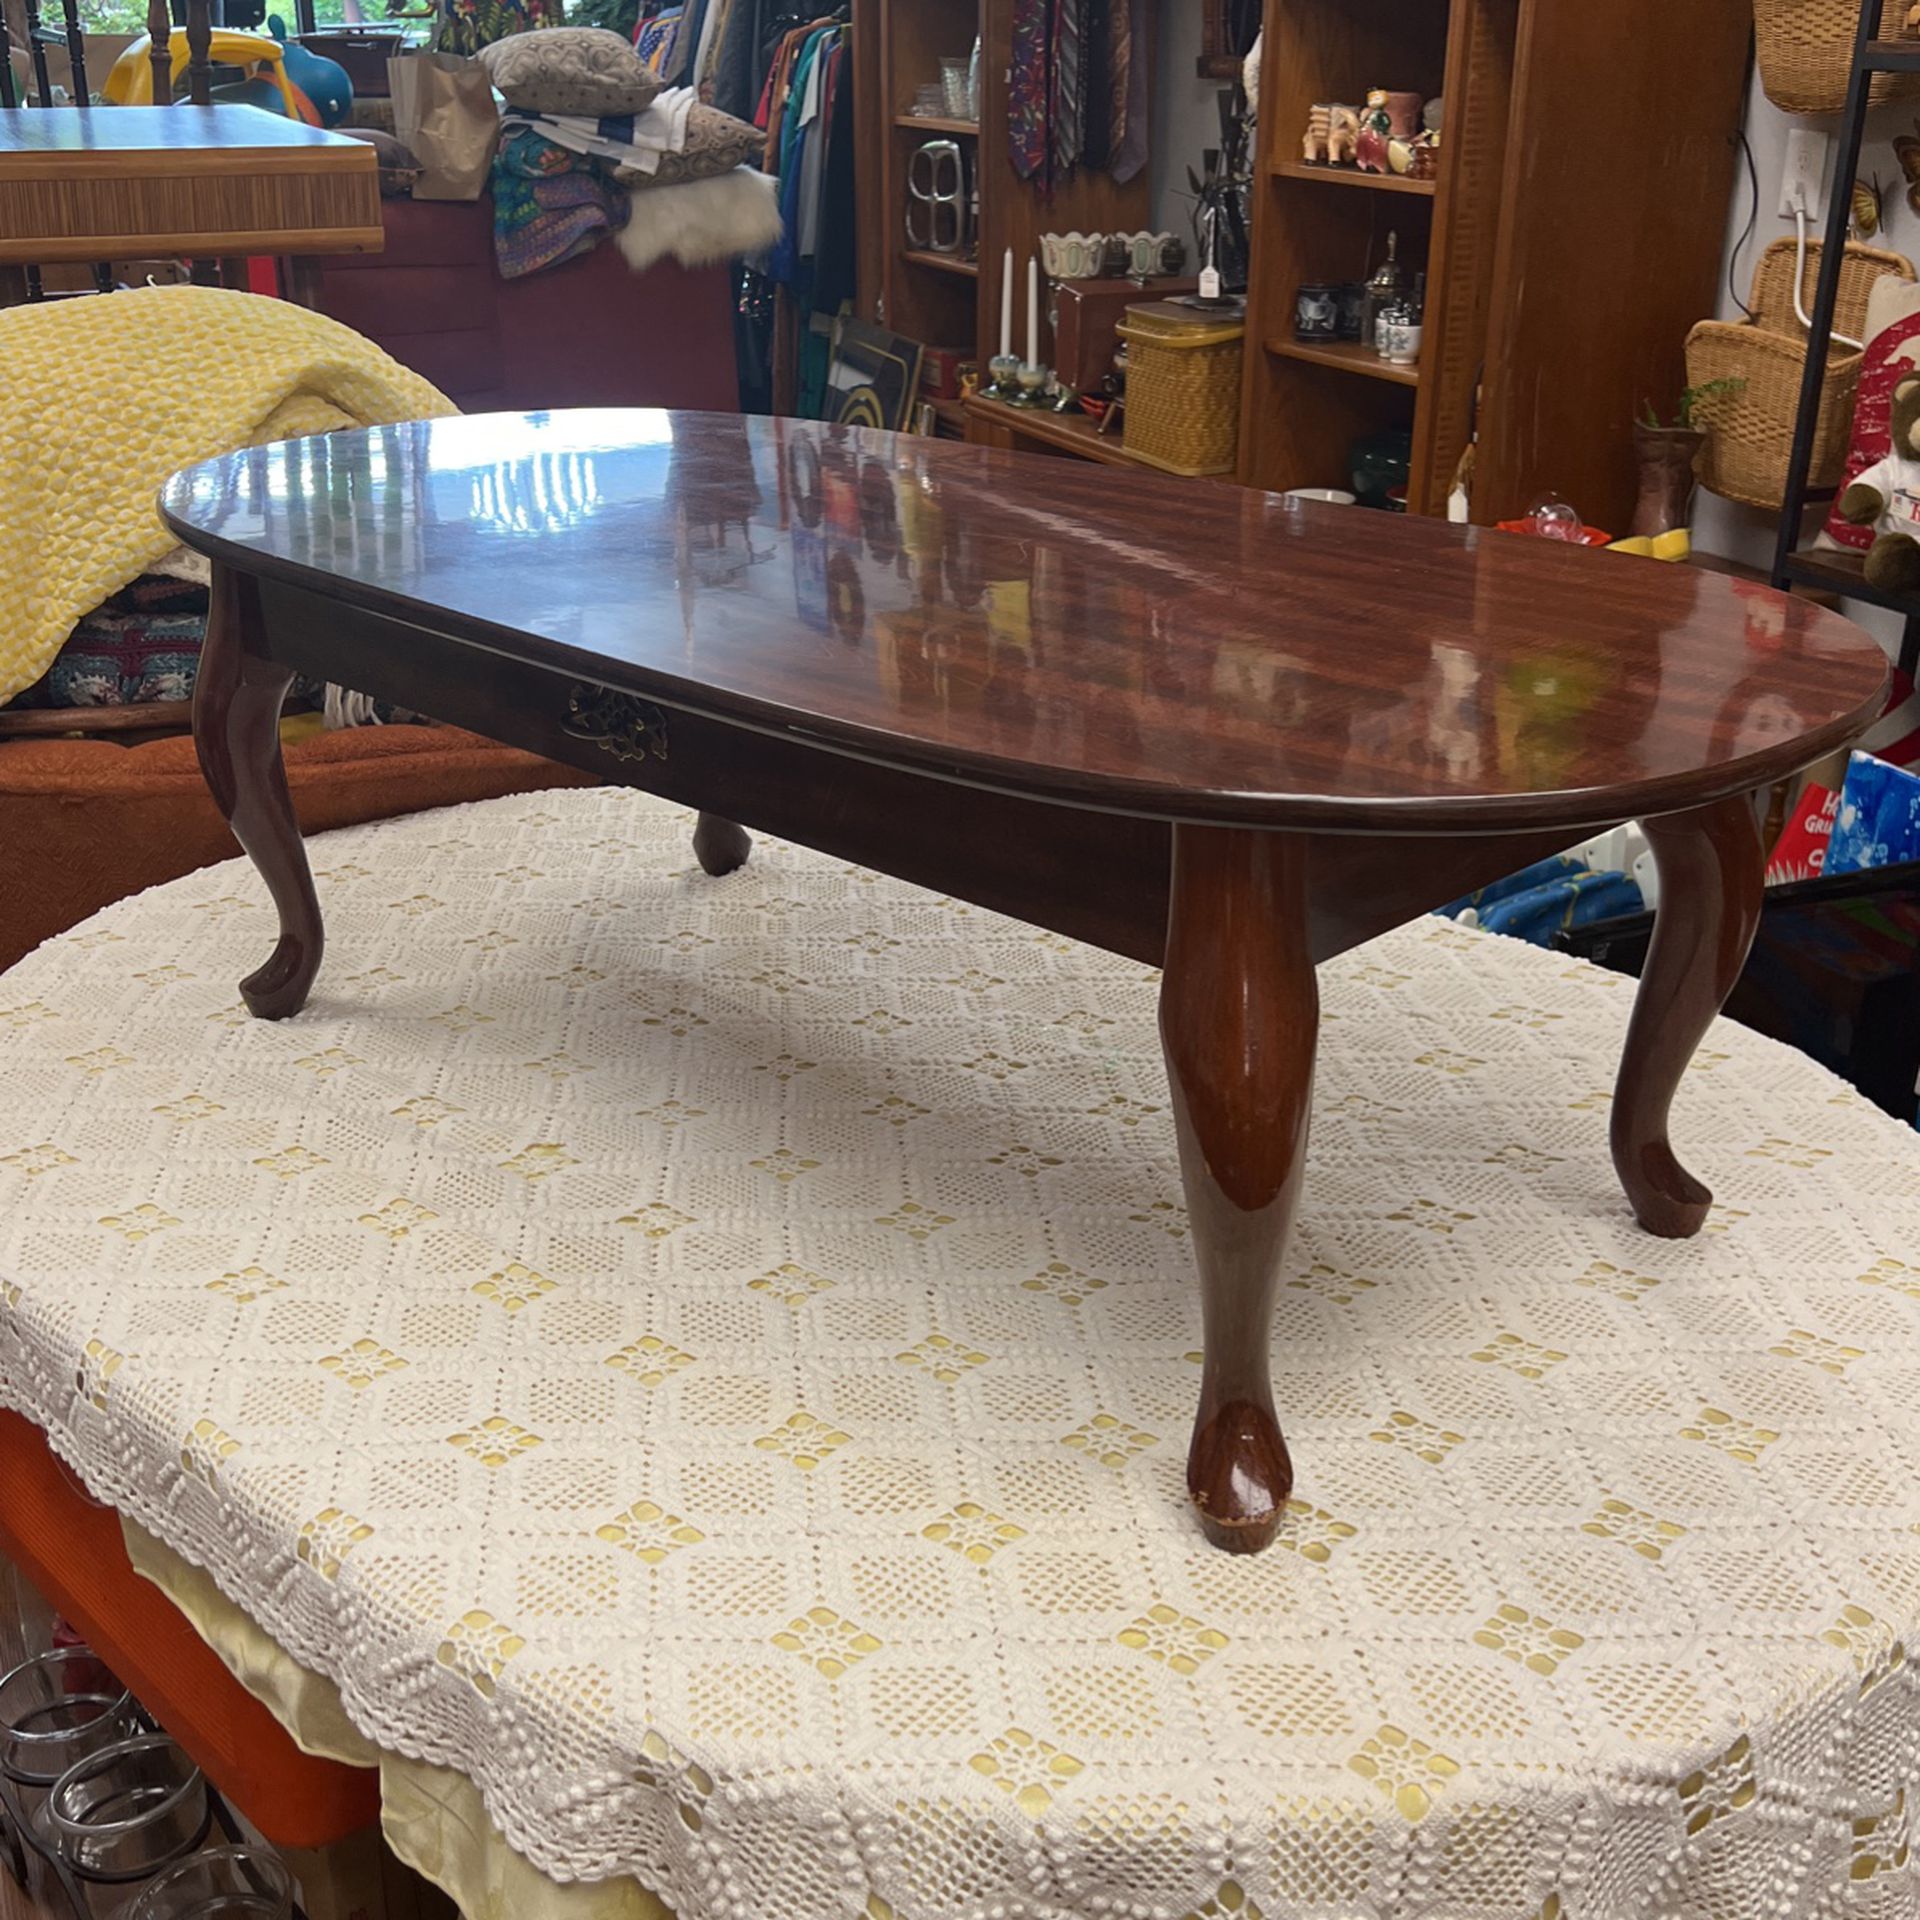 Vintage Oval Coffee Table